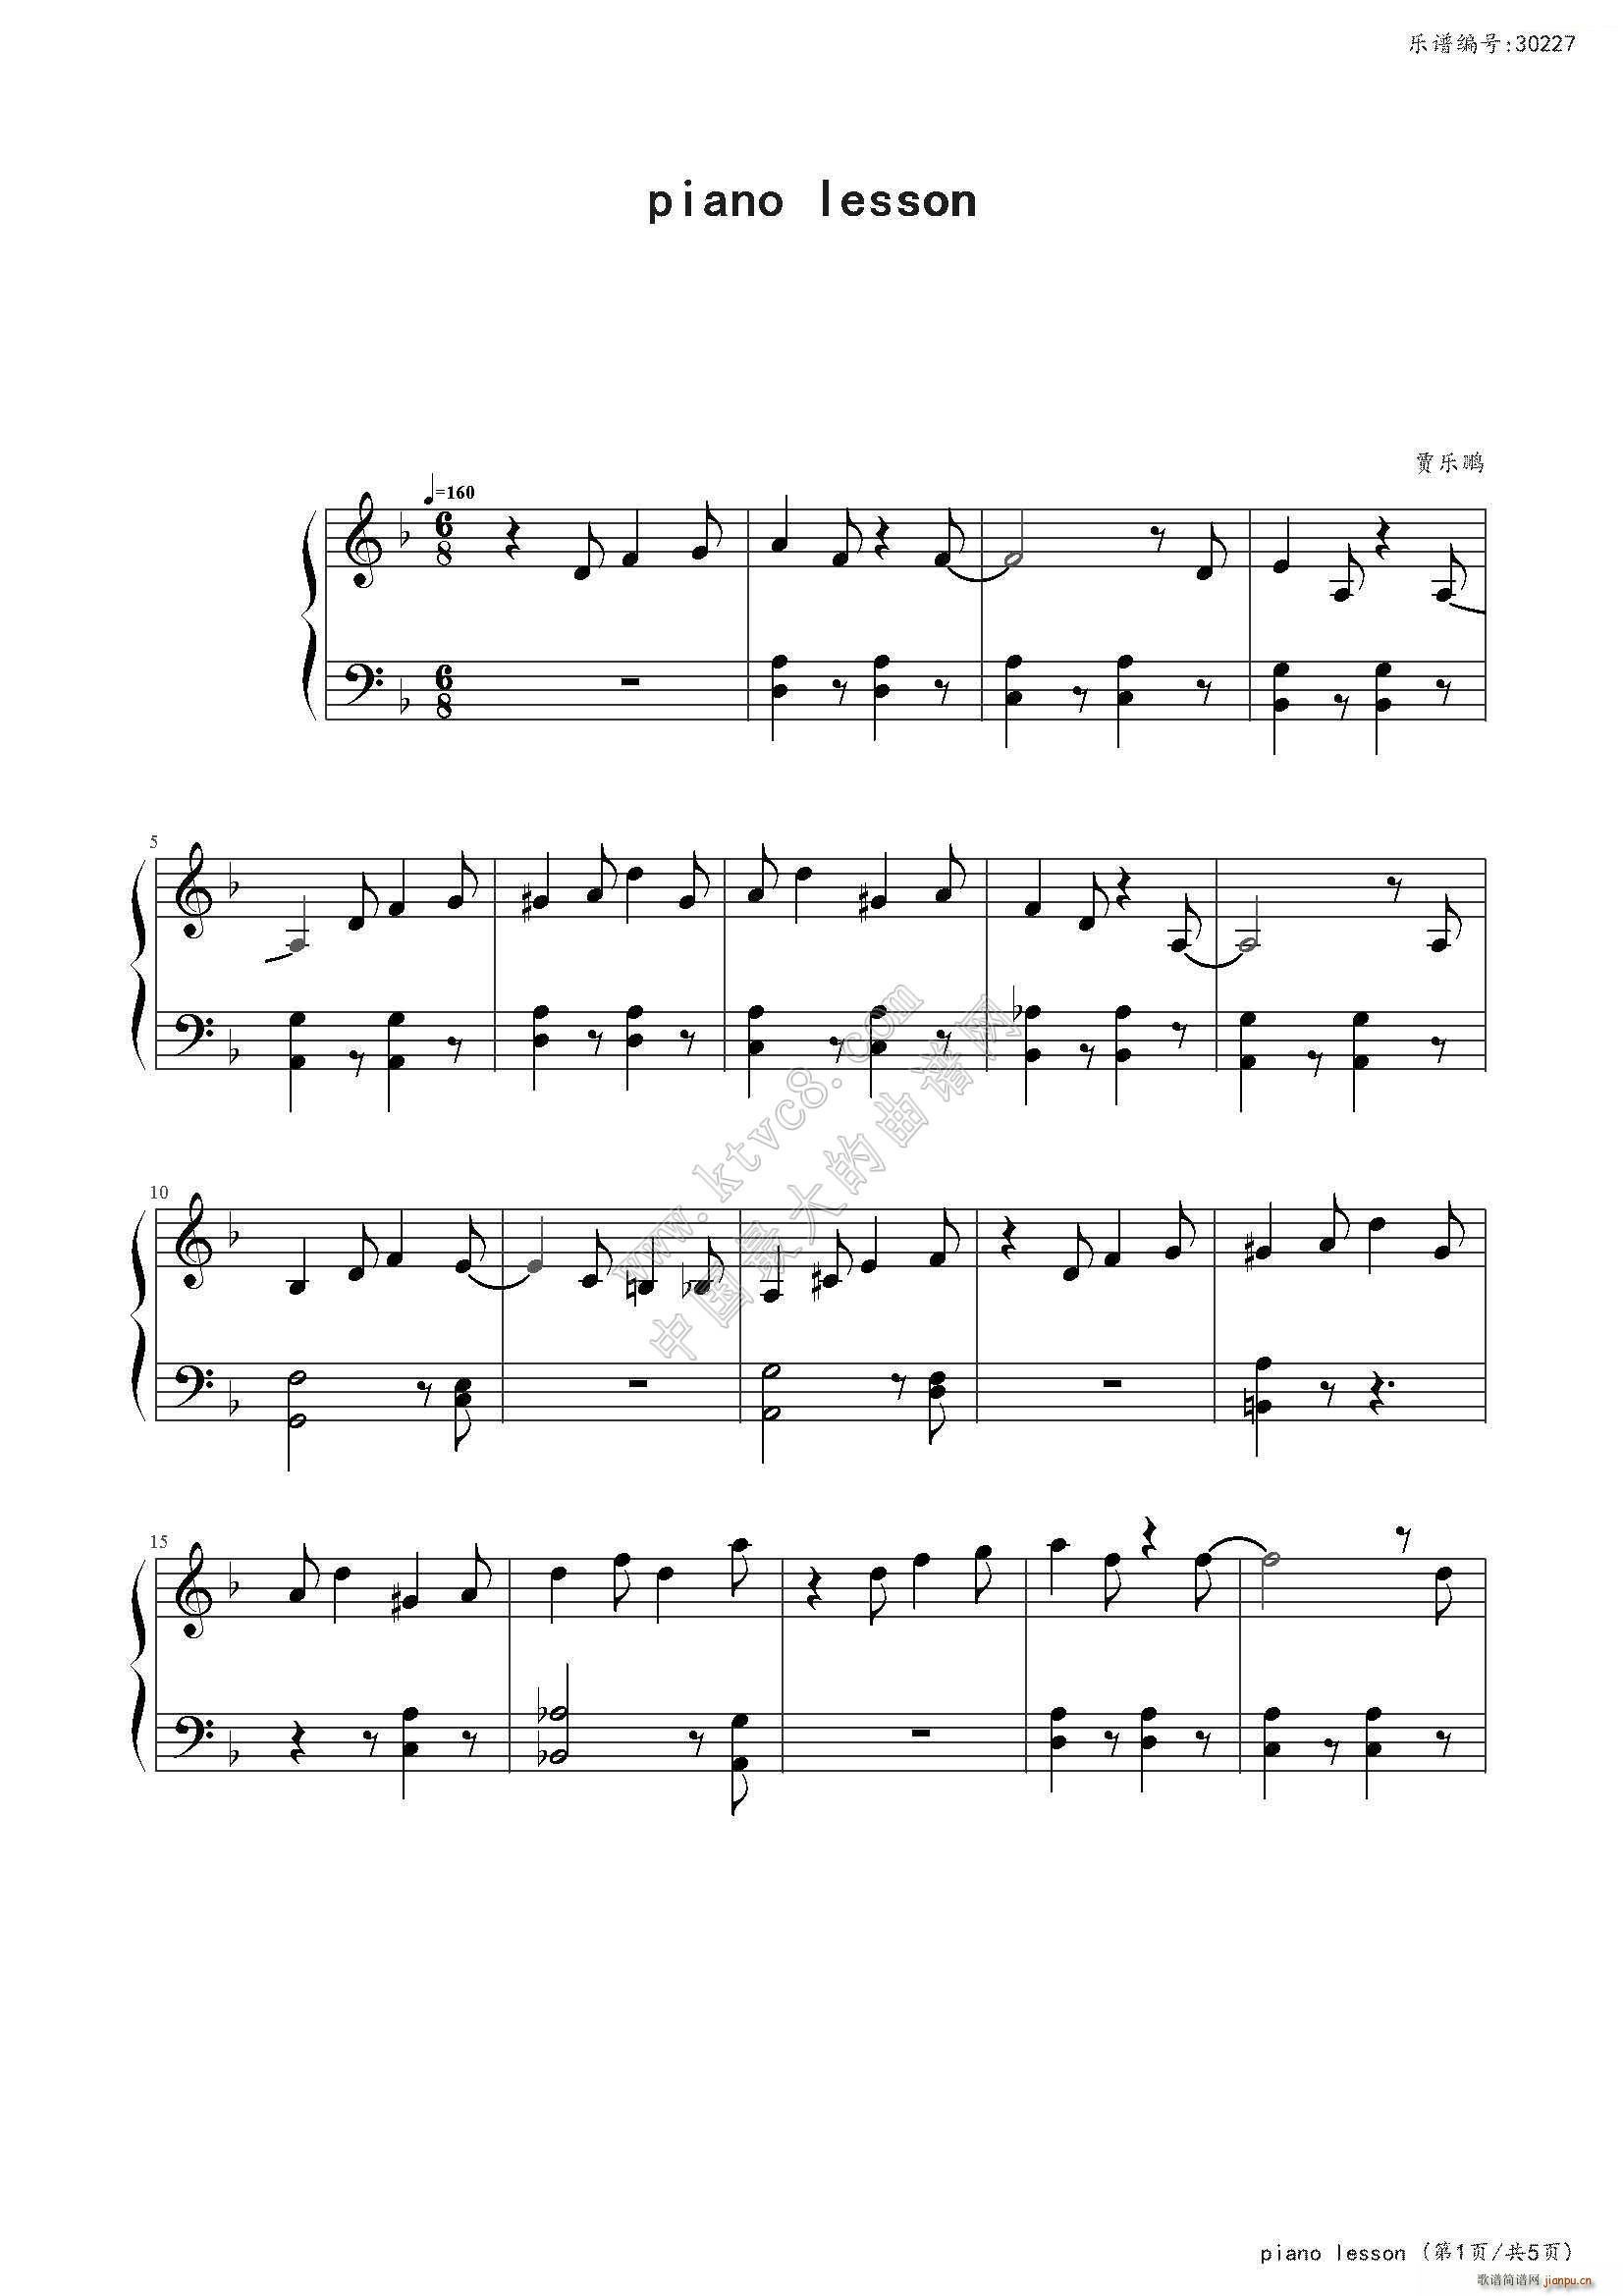 piano lesson()1